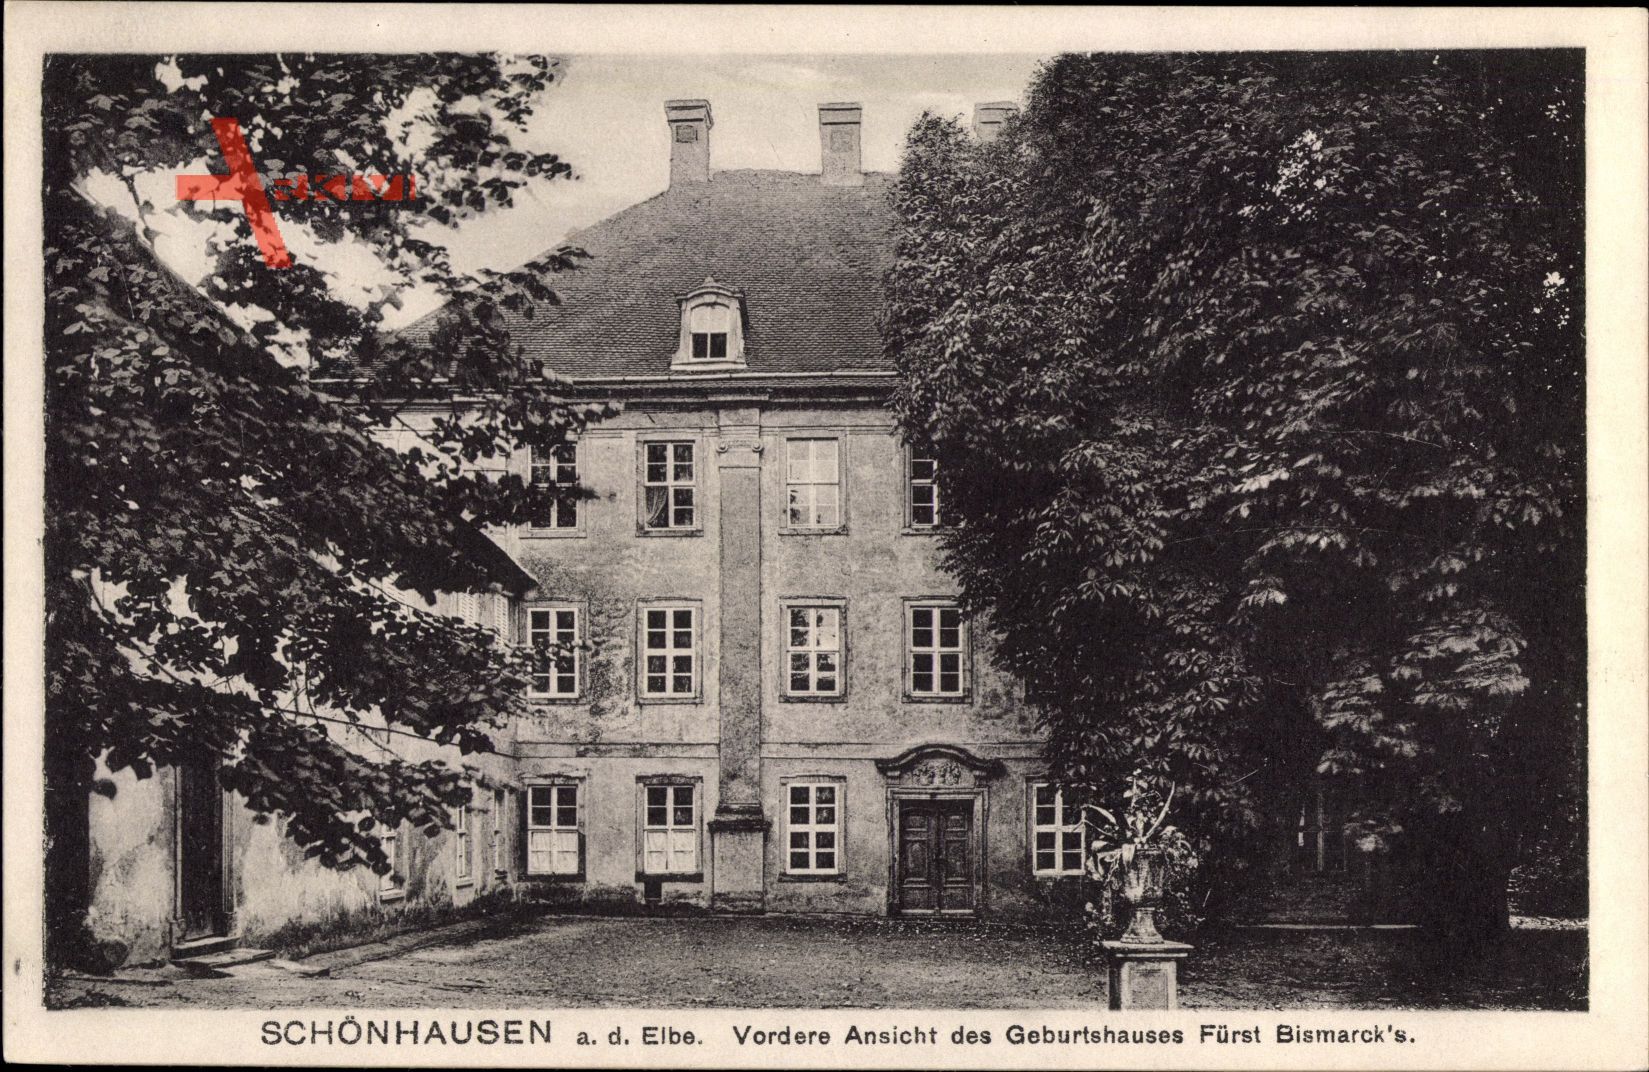 Schönhausen a.d. Elbe, Vordere Ansicht des Geburtshauses Fürst Bismarcks